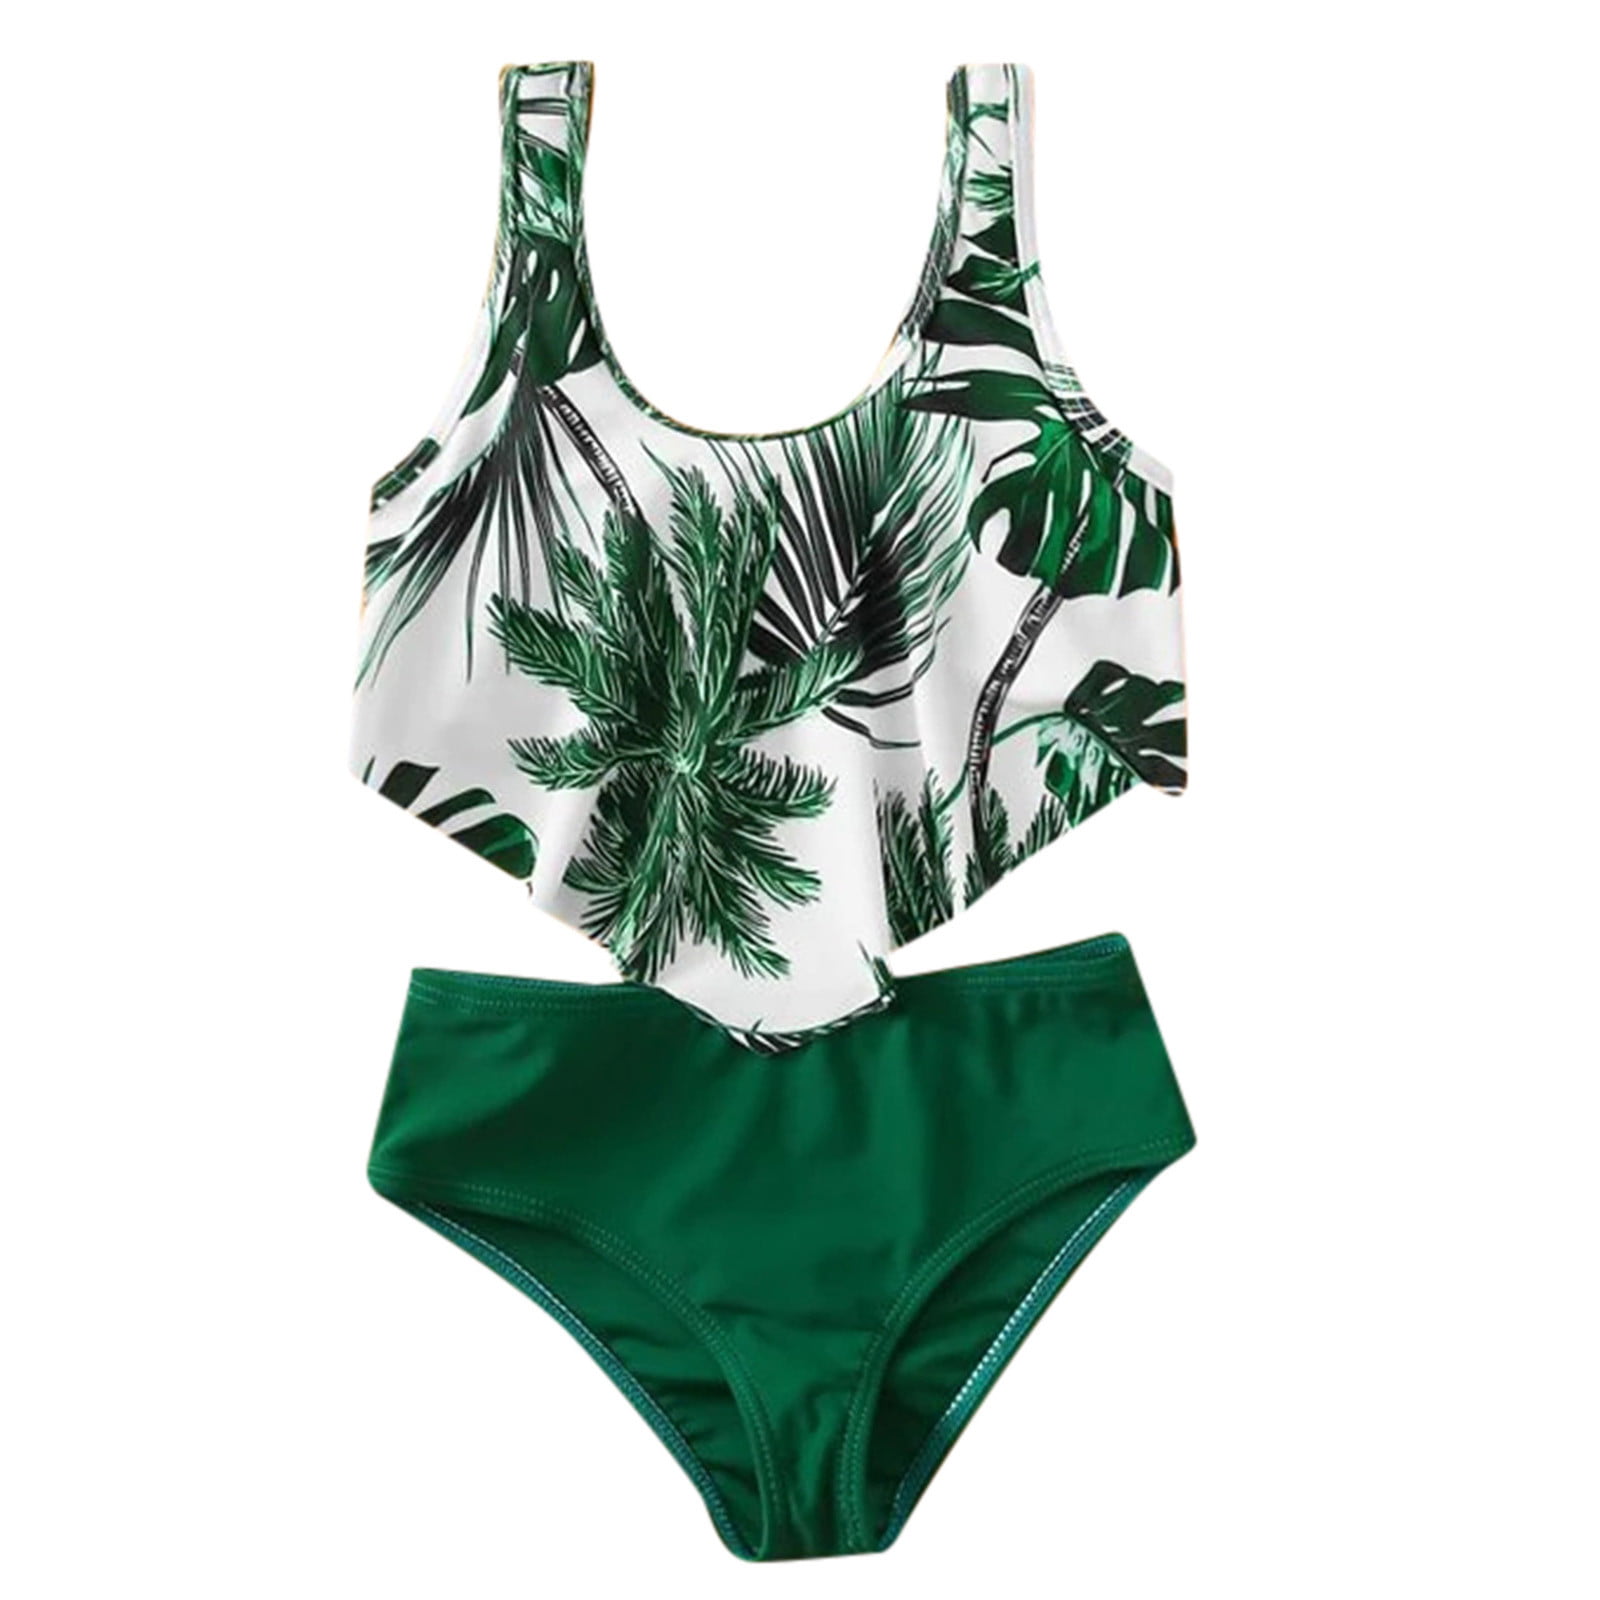 Fesfesfes Teen Girls Swimwear Botanical Print Pattern Patchwork Bathing Suits Sleeveless Swimdress Beach Wear Two Piece Split Swimsuit